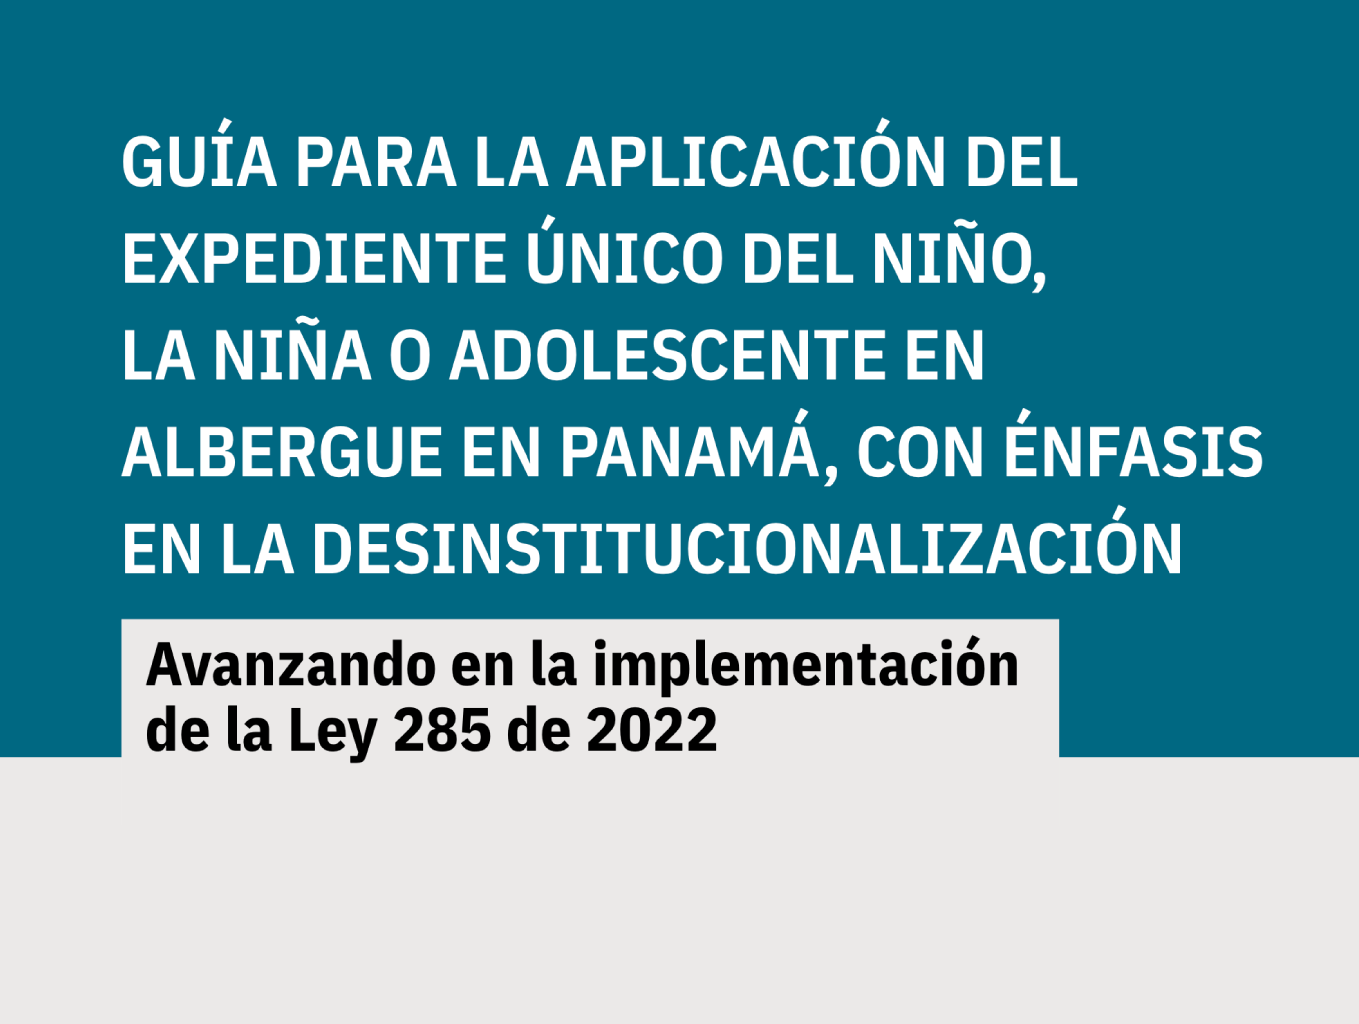 Guía para la aplicación del expediente único del niño, la niña o adolescente en albergue en Panamá, con énfasis en la desinstitucionalización. Avanzando en la implementación de la Ley 285 de 2022